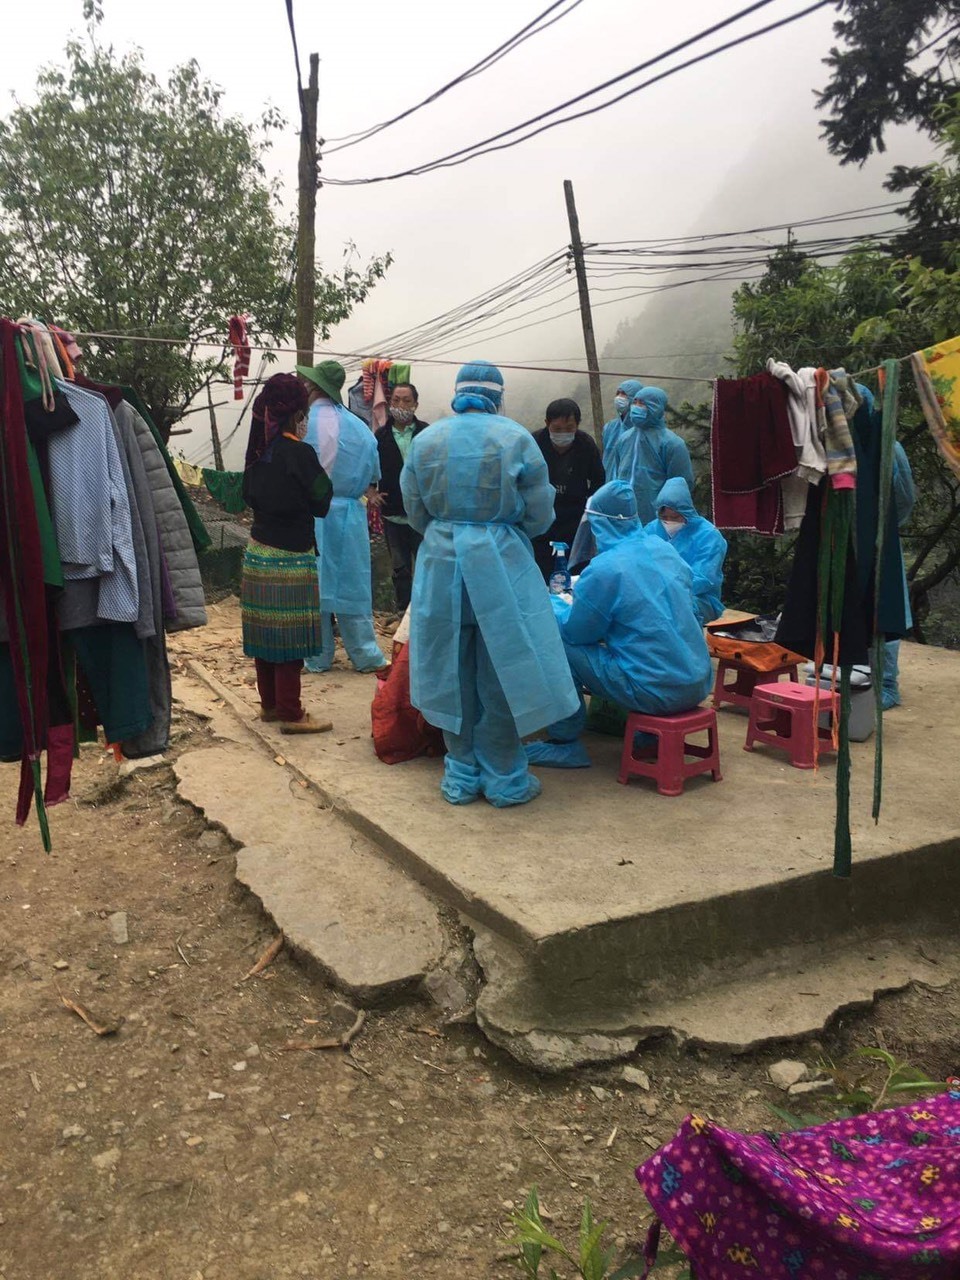 Ngành y tế đã điều tra tiếp xúc và lấy mẫu bệnh phẩm tổng số 318 người liên quan đến bệnh nhân số 268, trong đó có 187 người trong thôn Pín Tủng. Ảnh: CTV